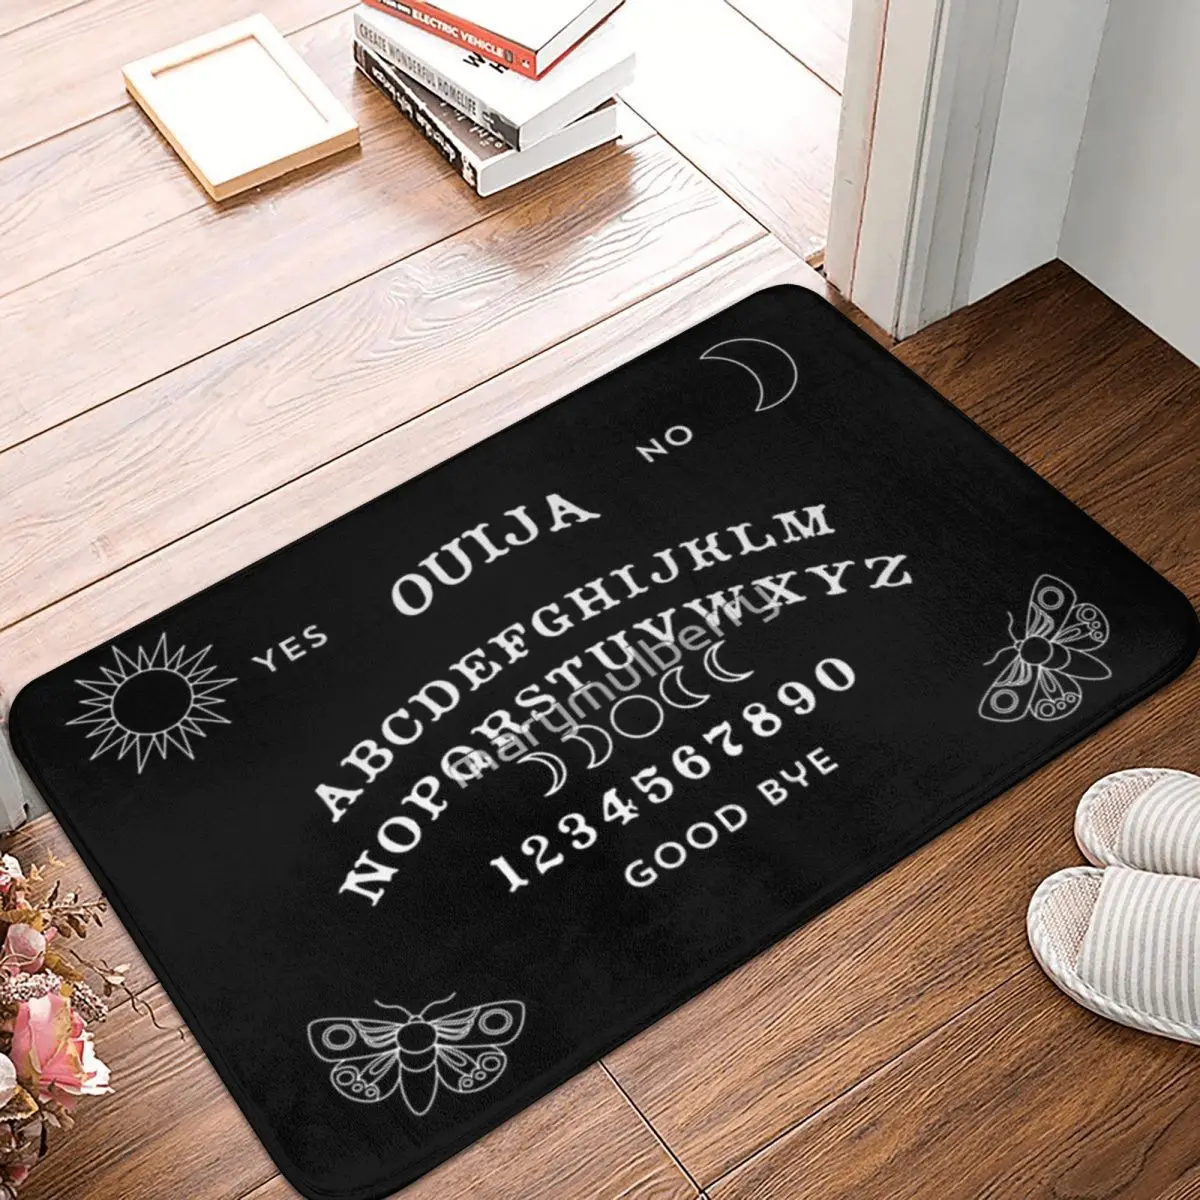 

Коврик Ouija, напольные коврики из полиэстера, милые стильные практичные подарки, коврики на заказ